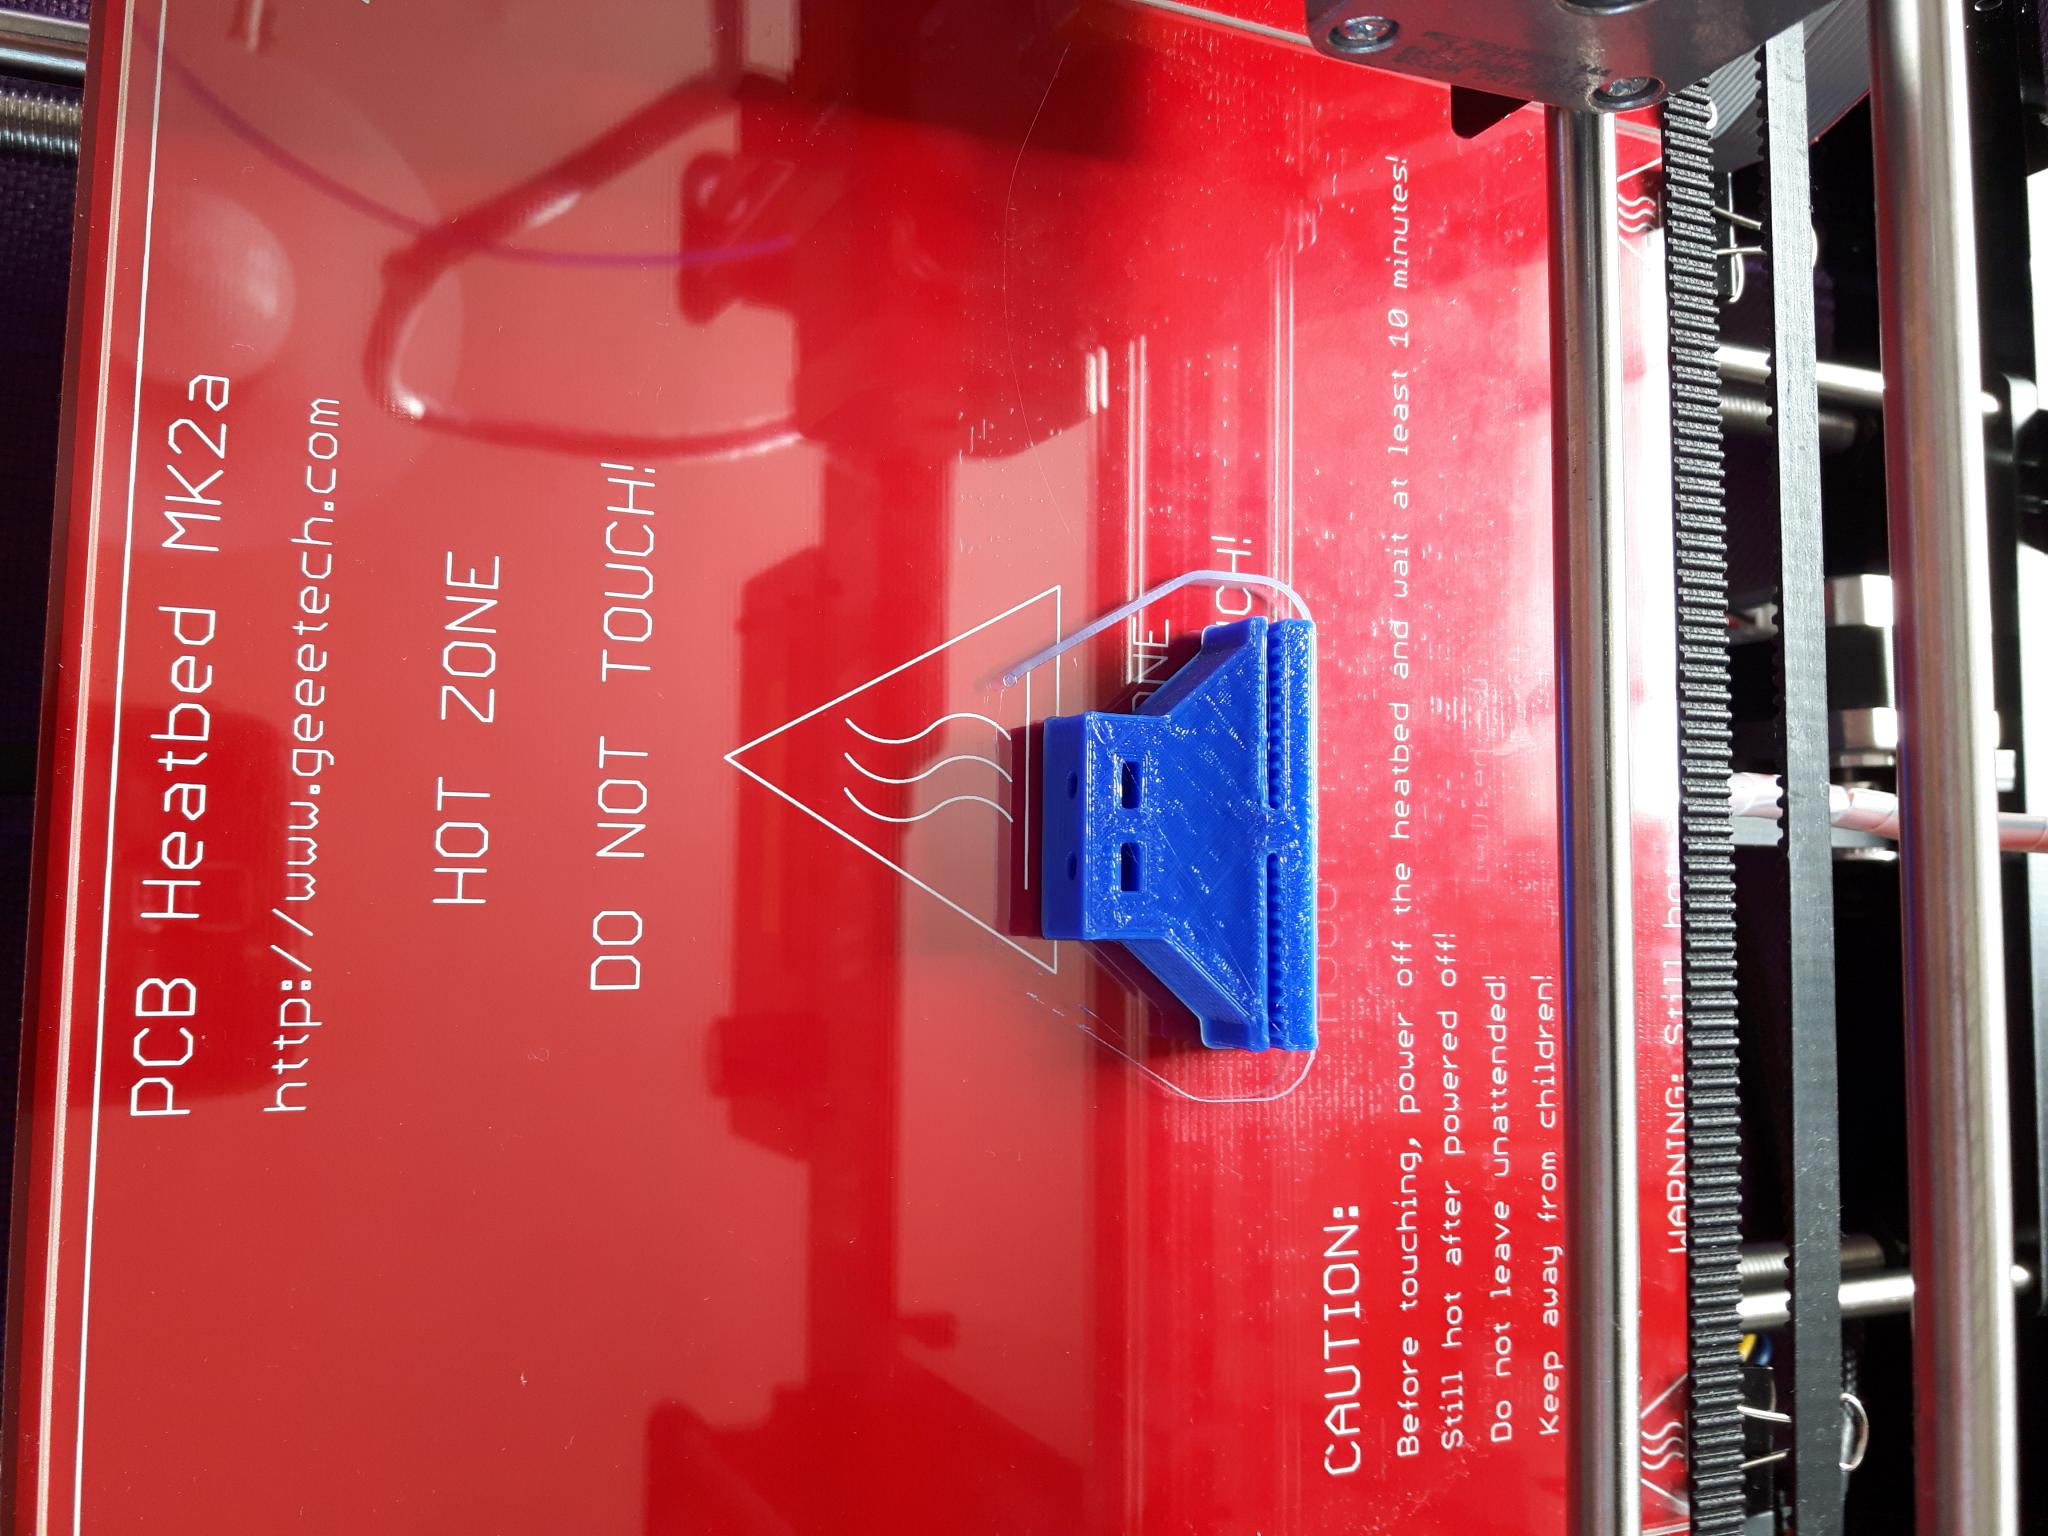 Peindre du PLA ? - GEEETech - Forum pour les imprimantes 3D et l